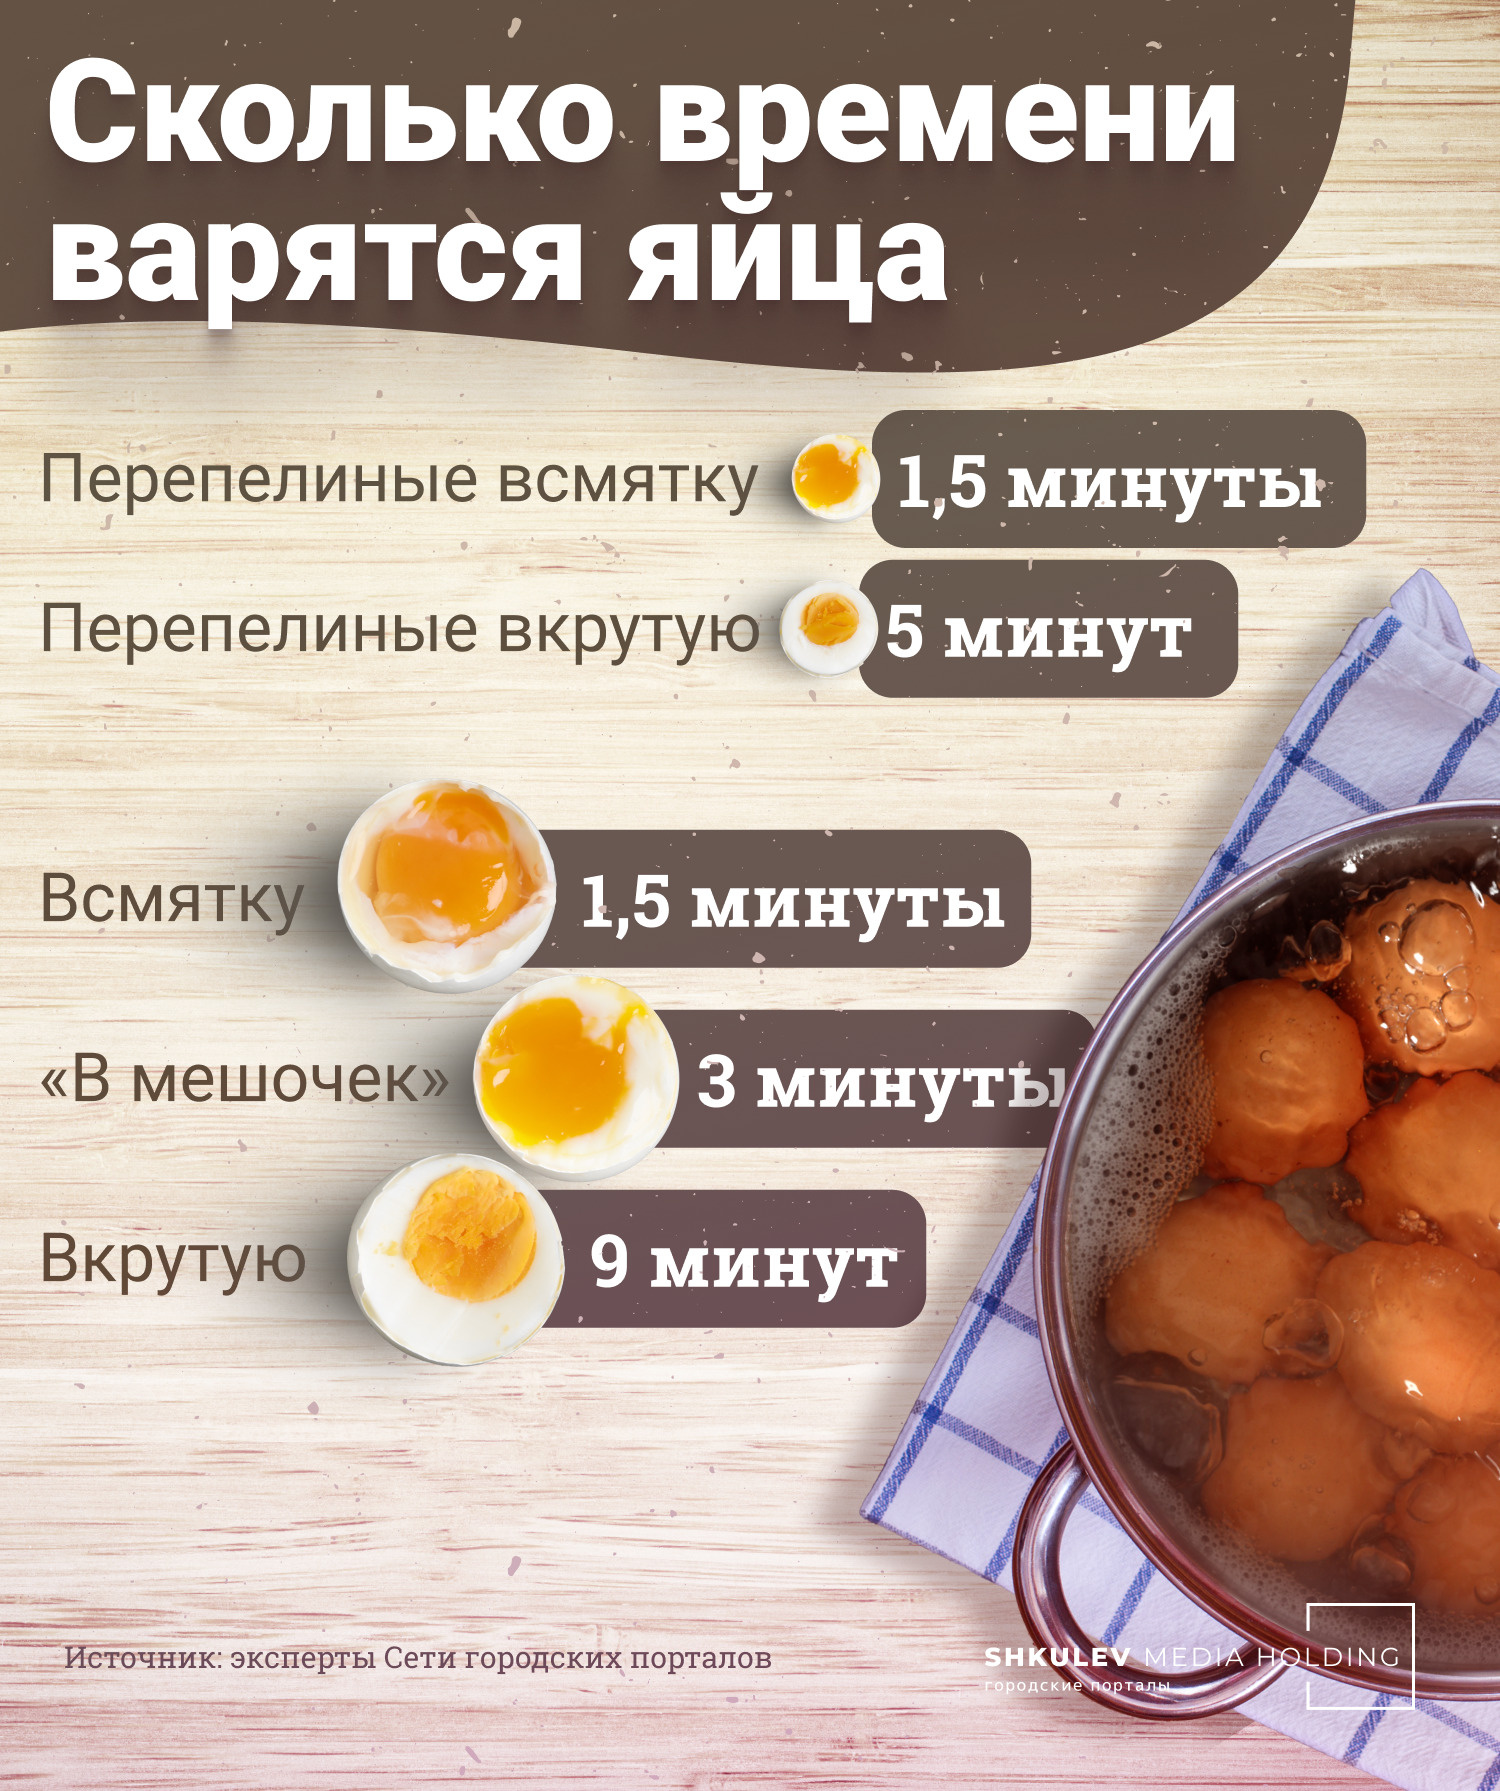 Сколько времени надо варить яйца, чтобы приготовить их вкрутую, всмятку и «в мешочек»